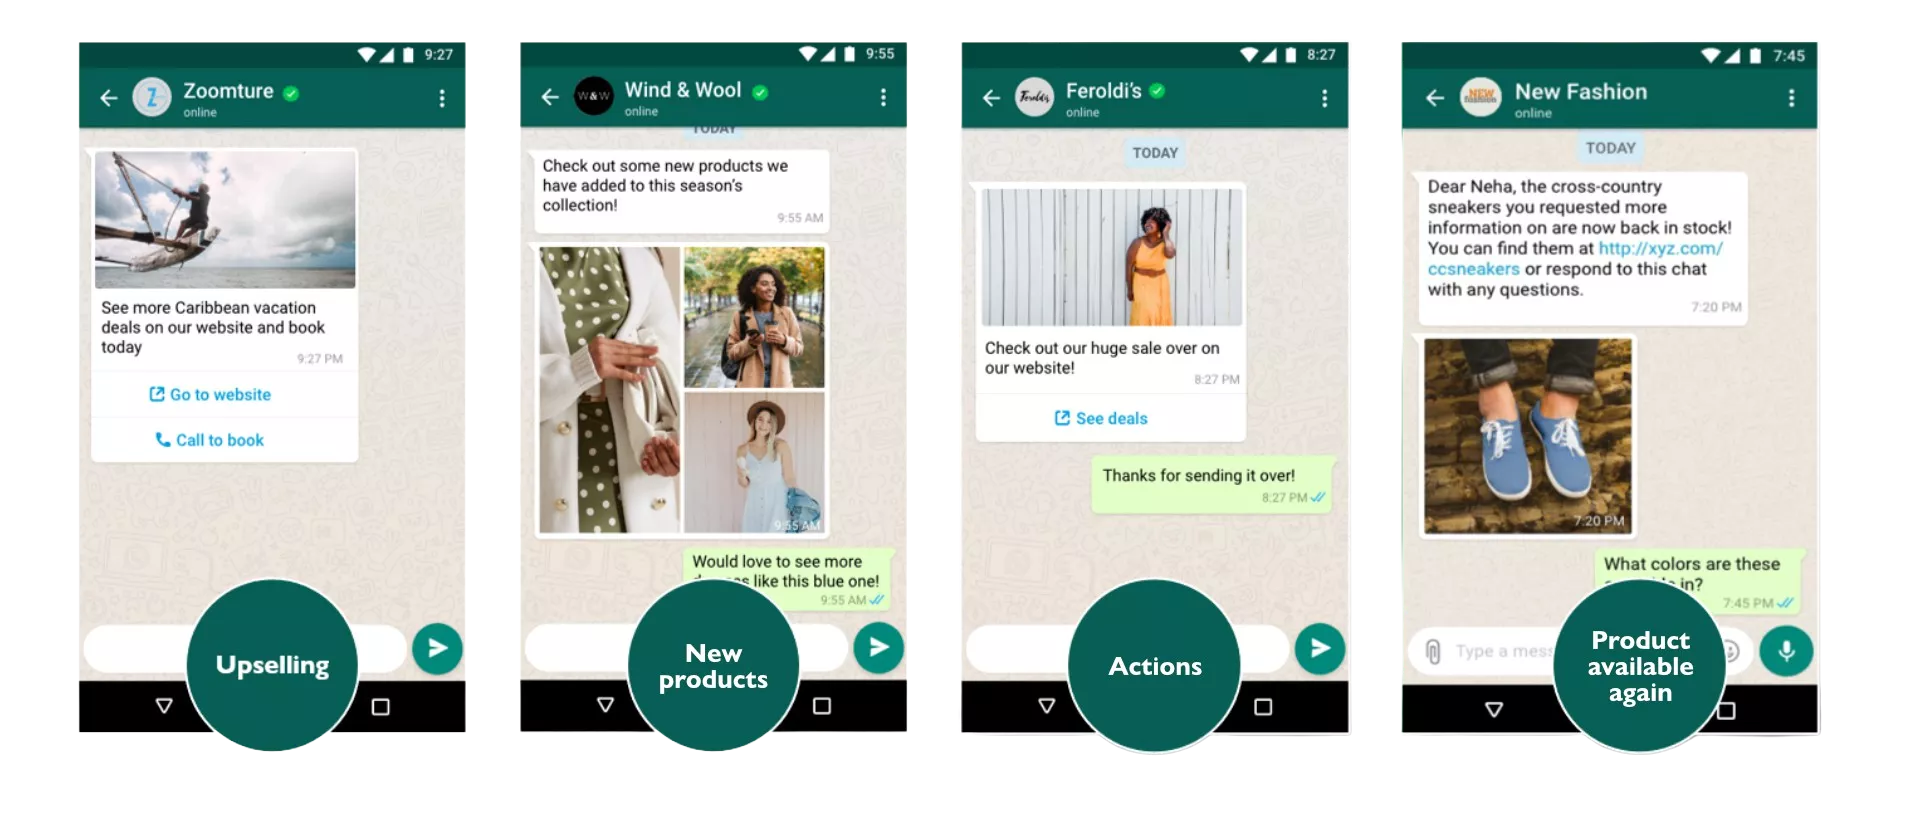 Use Cases für den WhatsApp Newsletter auf einen Blick